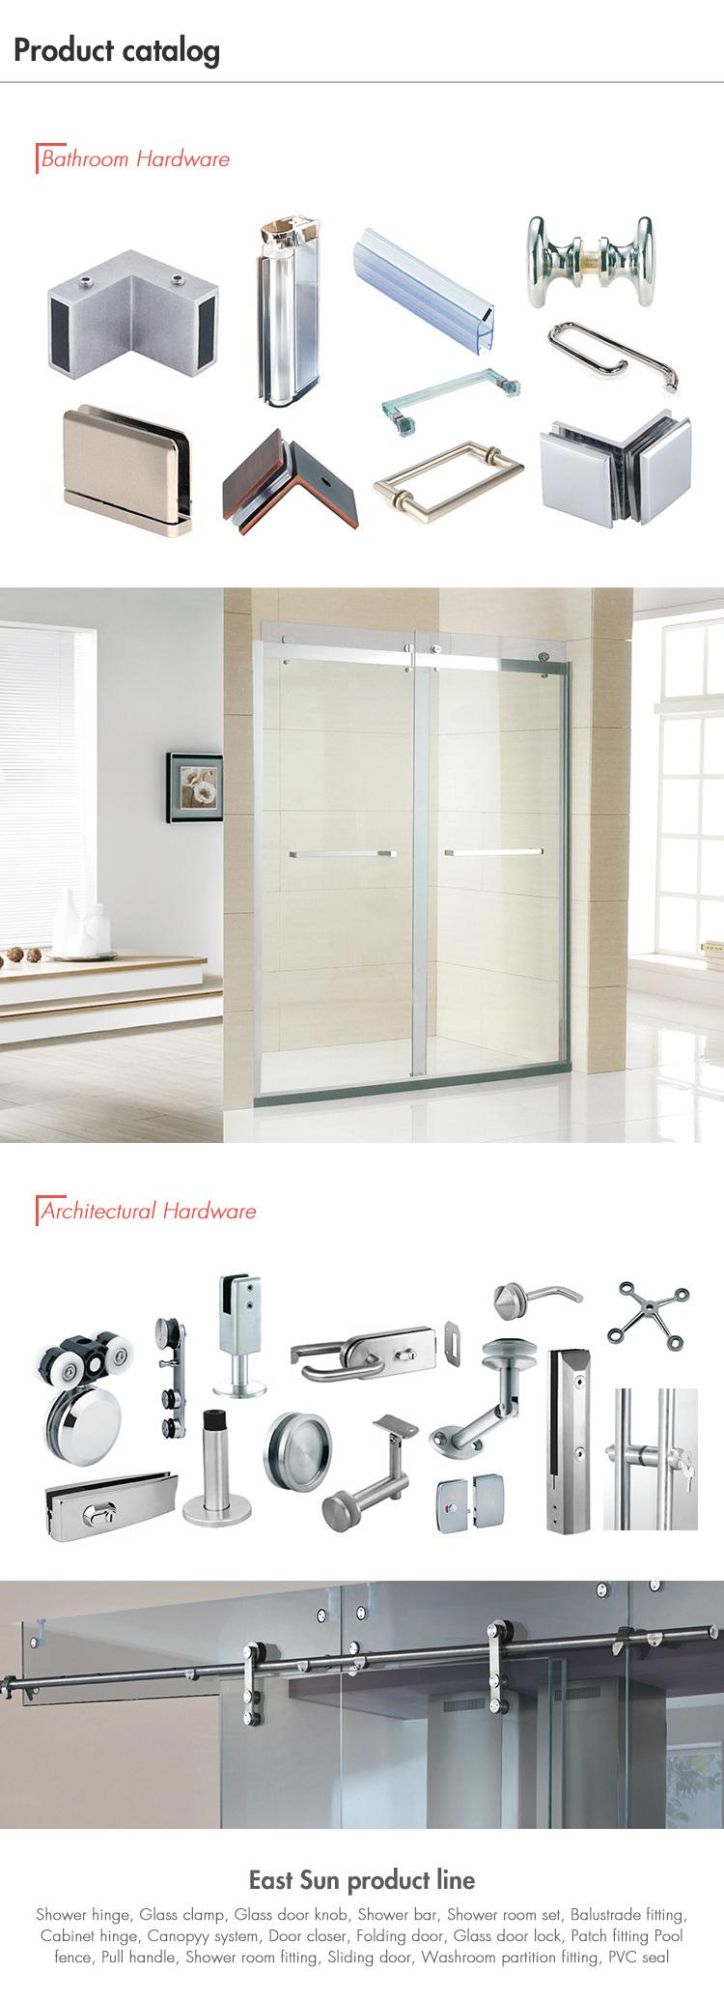 Aluminum Door Two Side Handle Stainless Steel Glass Door Pull Handle Furniture Door Handle (pH-079)